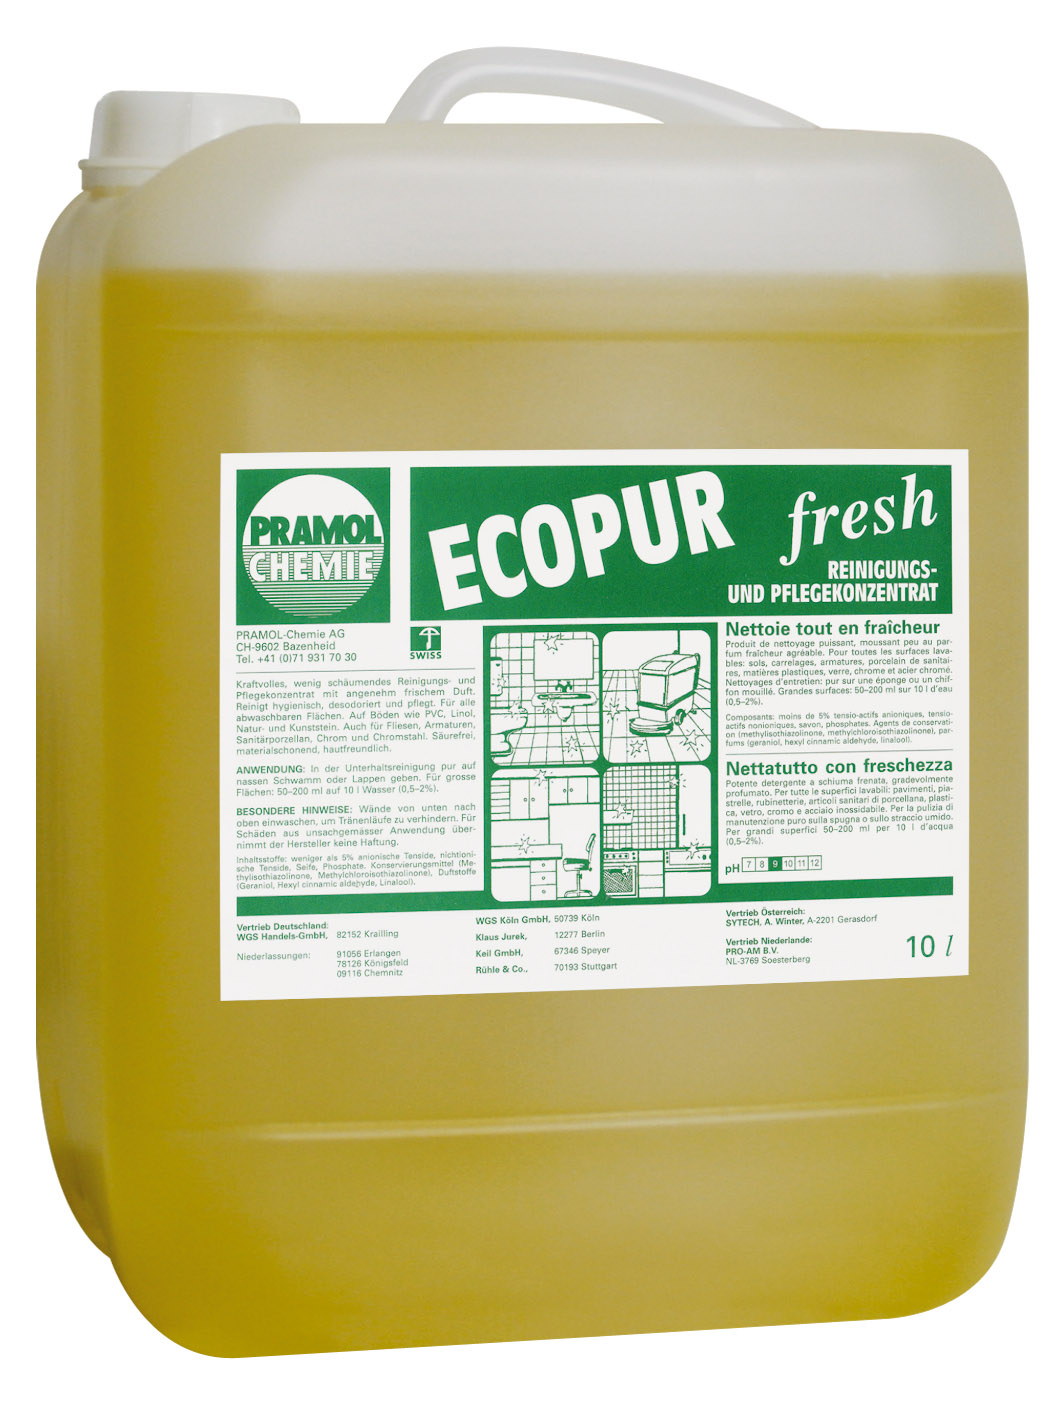 Pramol ecopur fresh, Reinigungs- und Pflegekonzentrat, 10 Liter